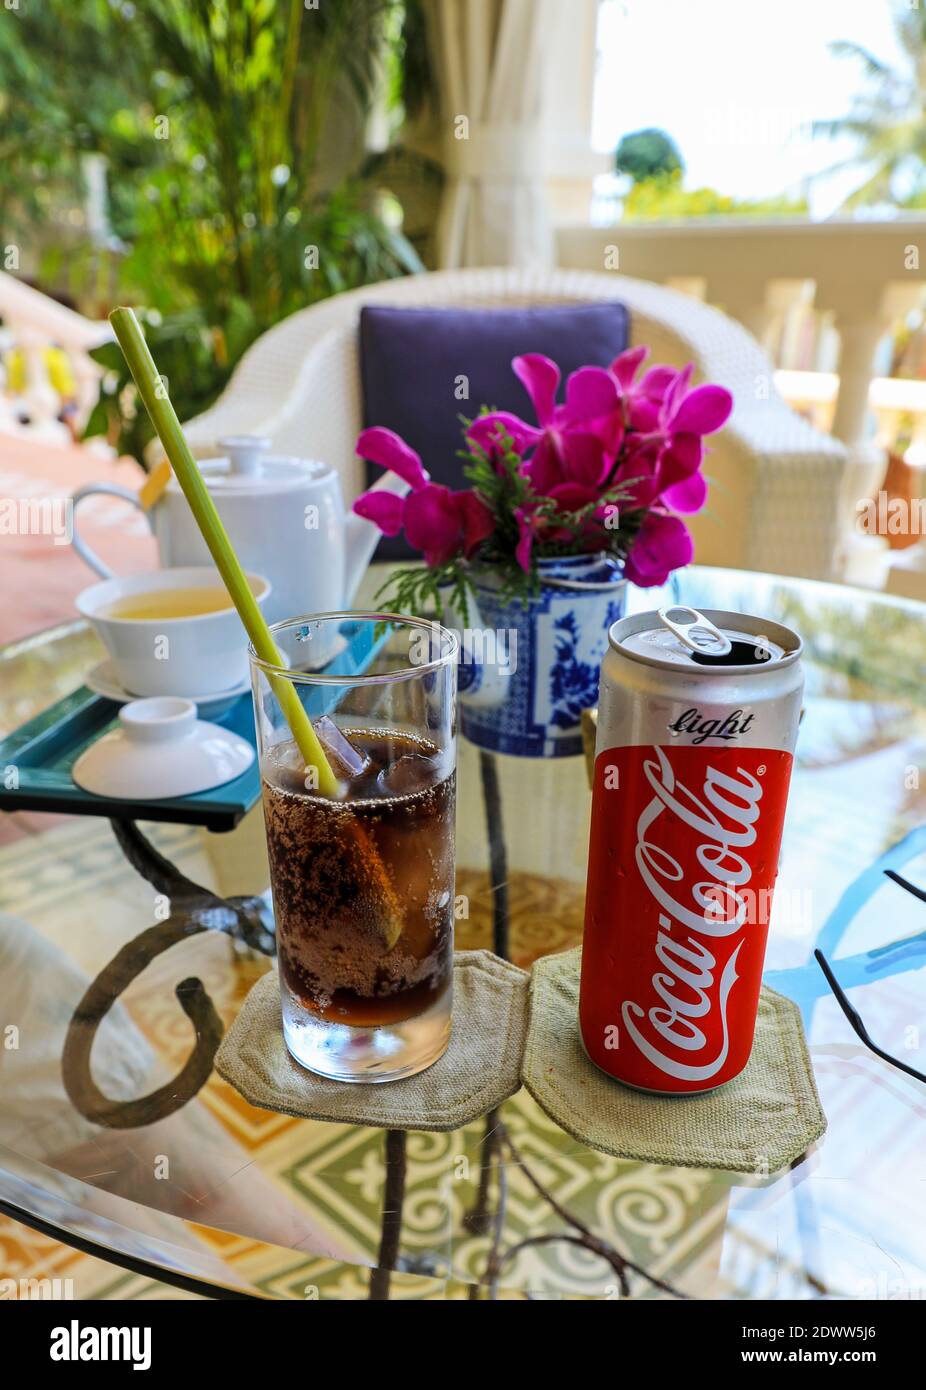 Lattina di Coca Cola leggera o dieta Coca Cola, vetro con paglia ecologica fatta da fusto di una pianta, la Veranda Resort, Phu Quoc, Vietnam, Asia Foto Stock